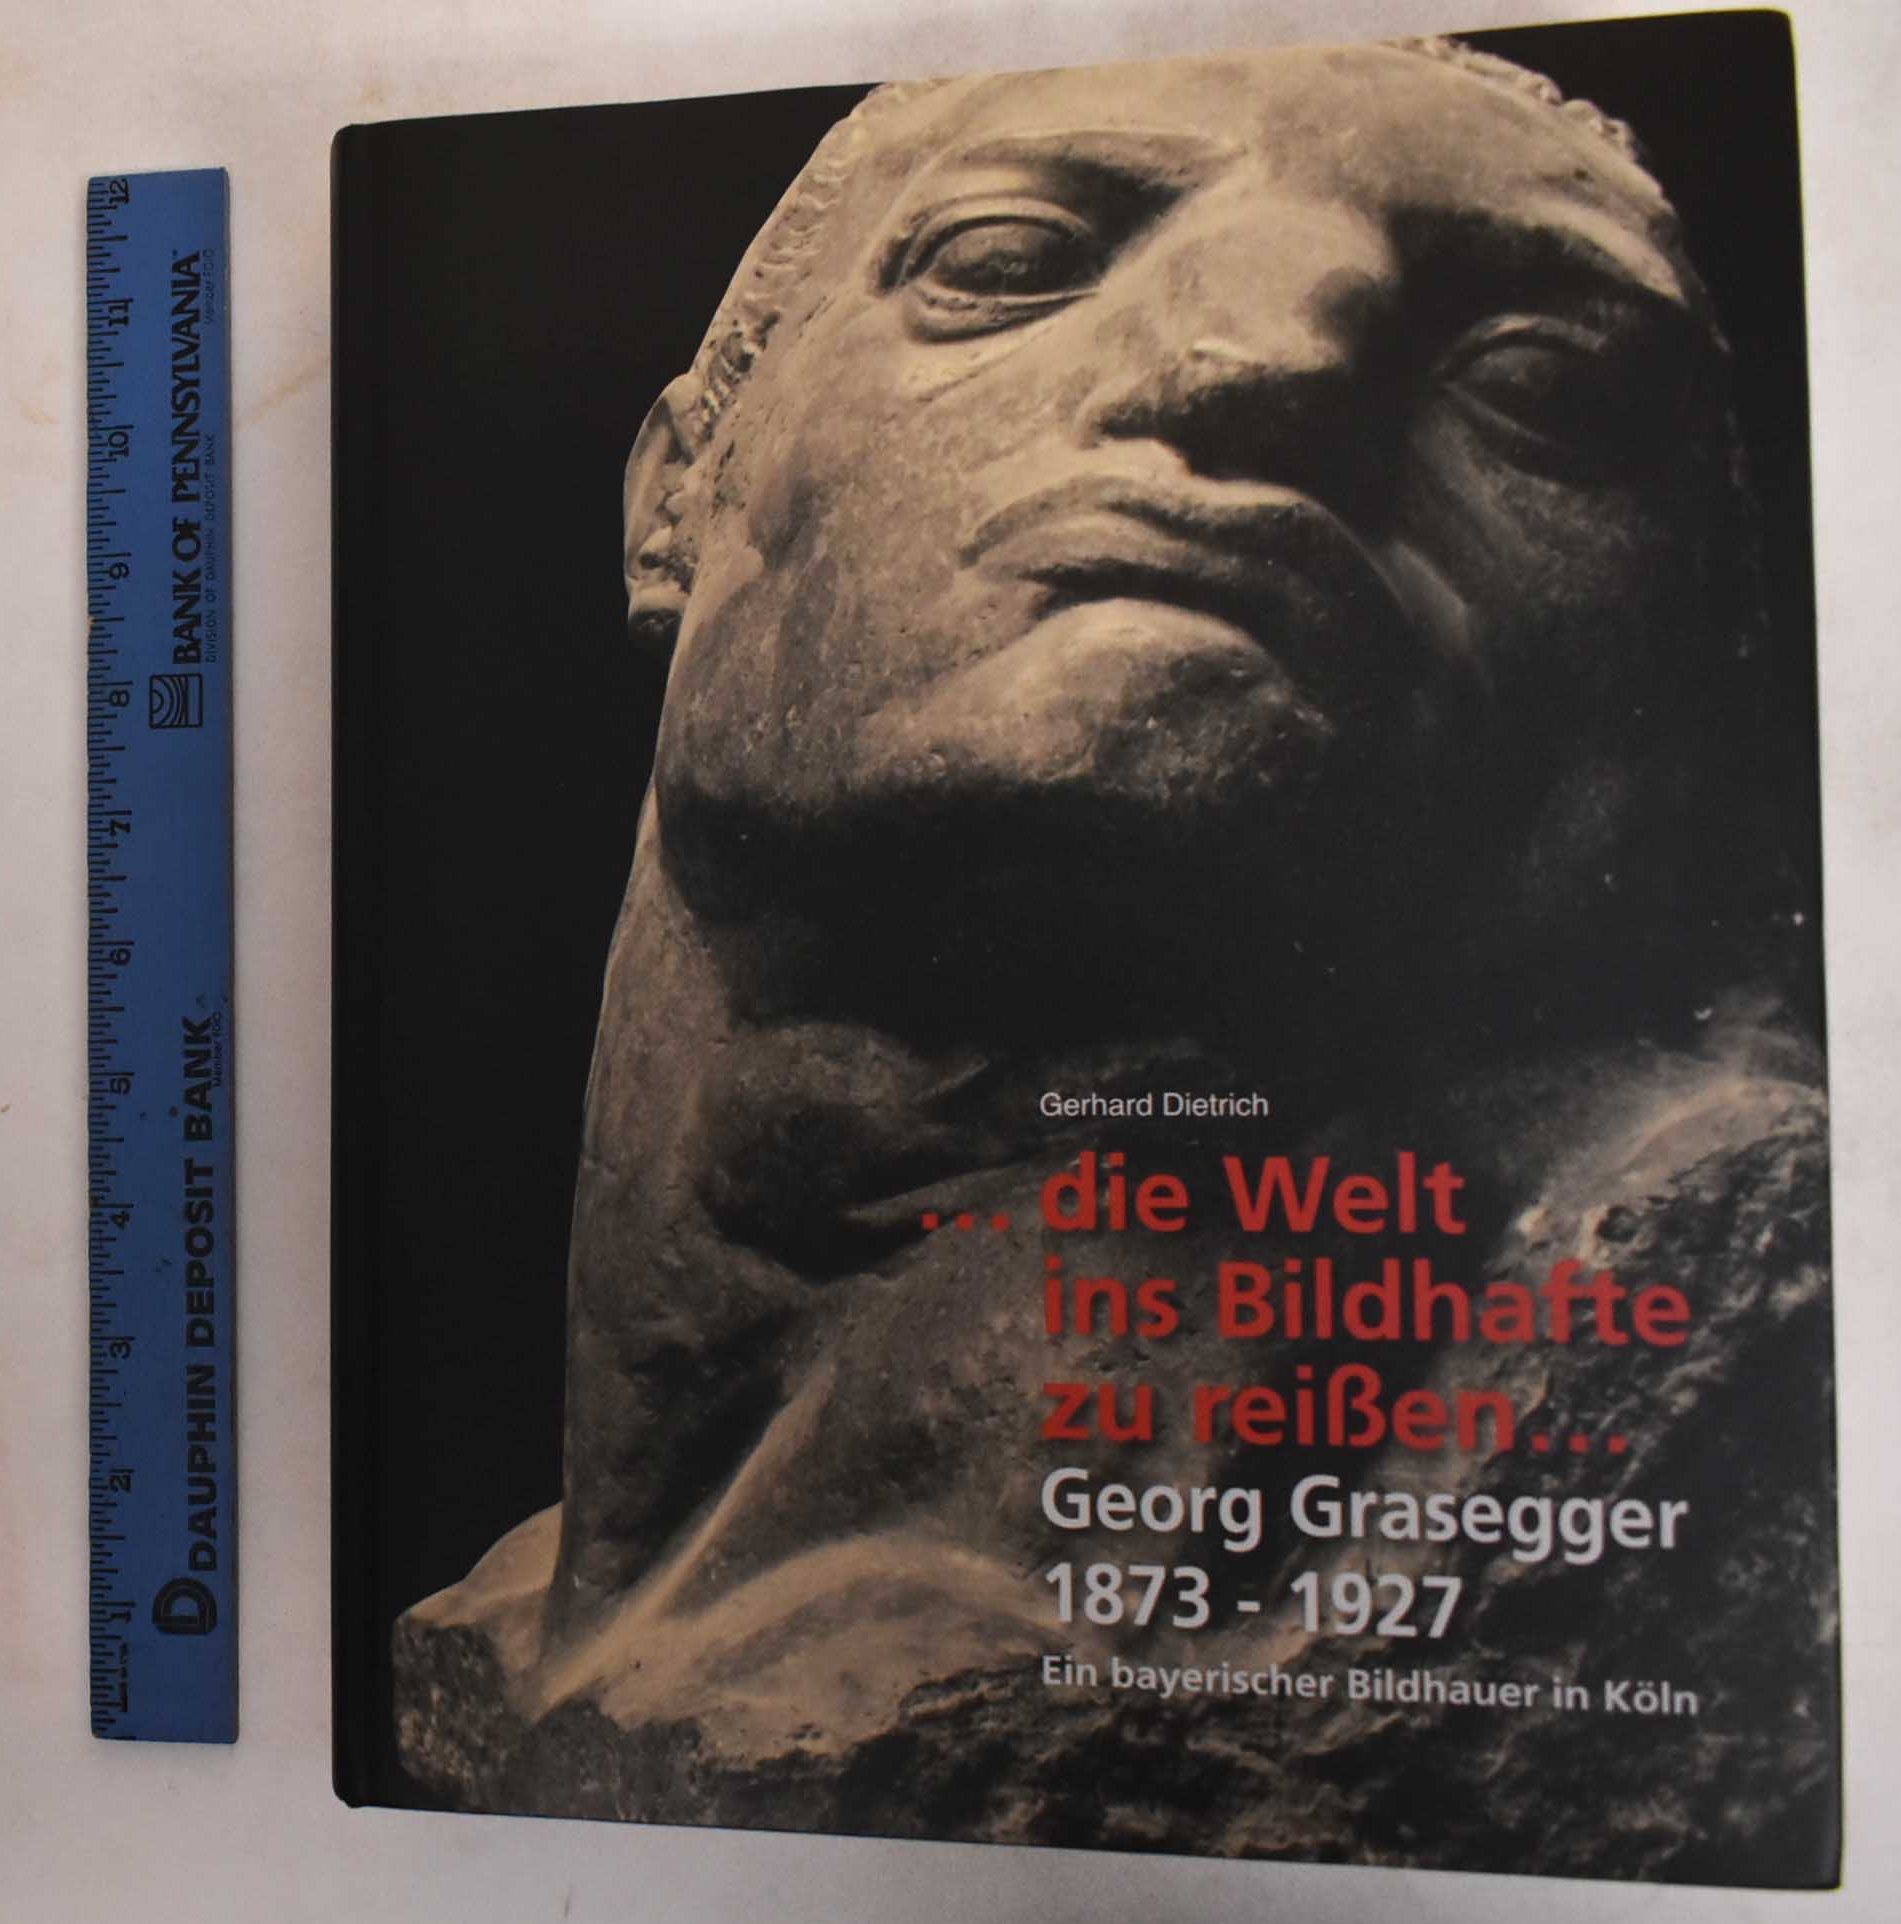 Welt ins Bildhafte zu reissen : Georg Grasegger 1873-1927 : ein bayerischer Bildhauer in Köln - Leben und Werk - Dietrich, Gerhard; Georg Grasegger